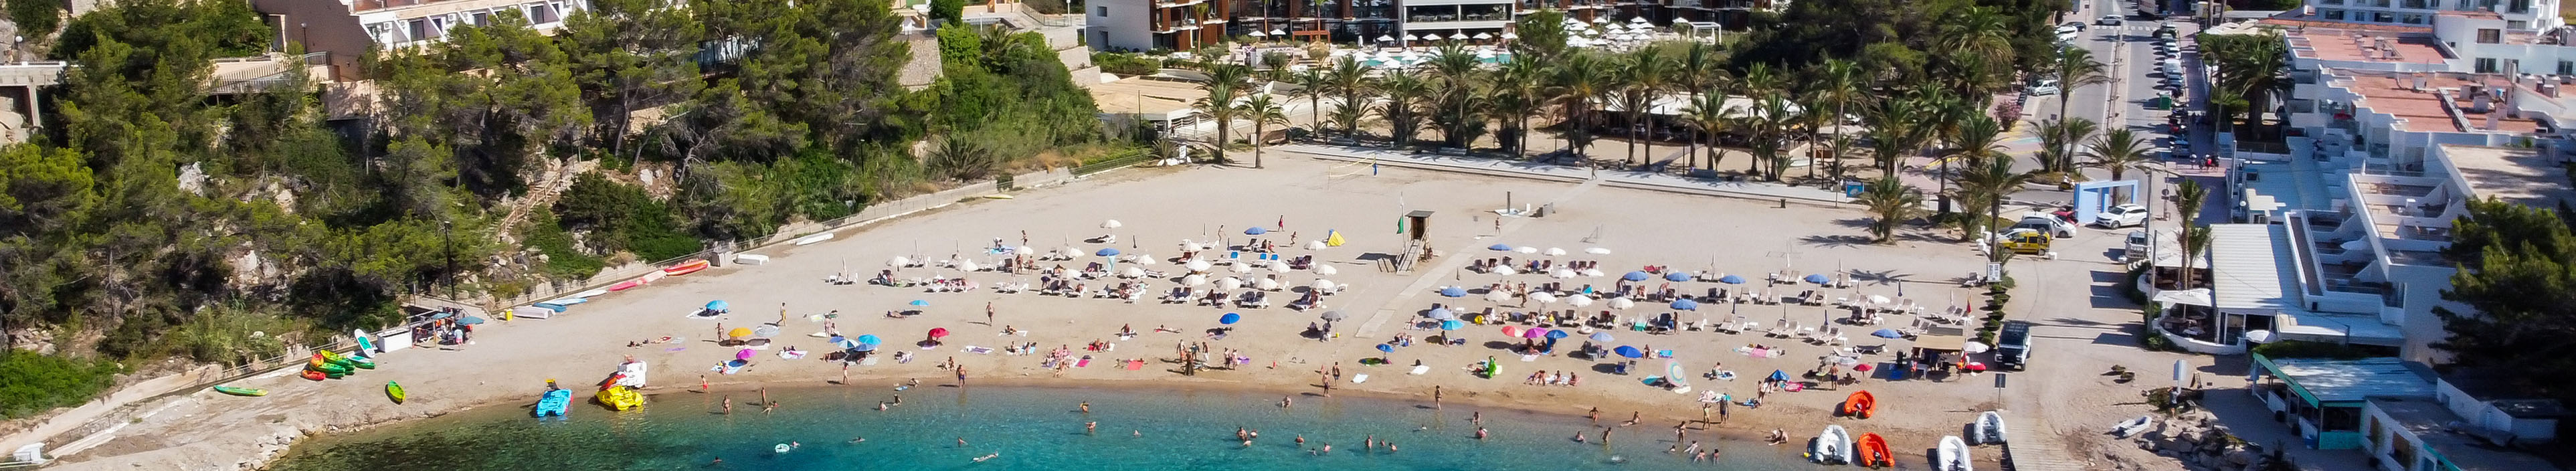 Strand auf Ibiza, im Hintergrund sieht man Hotels, im Vordergrund blaues Meer und Sonnenschirme